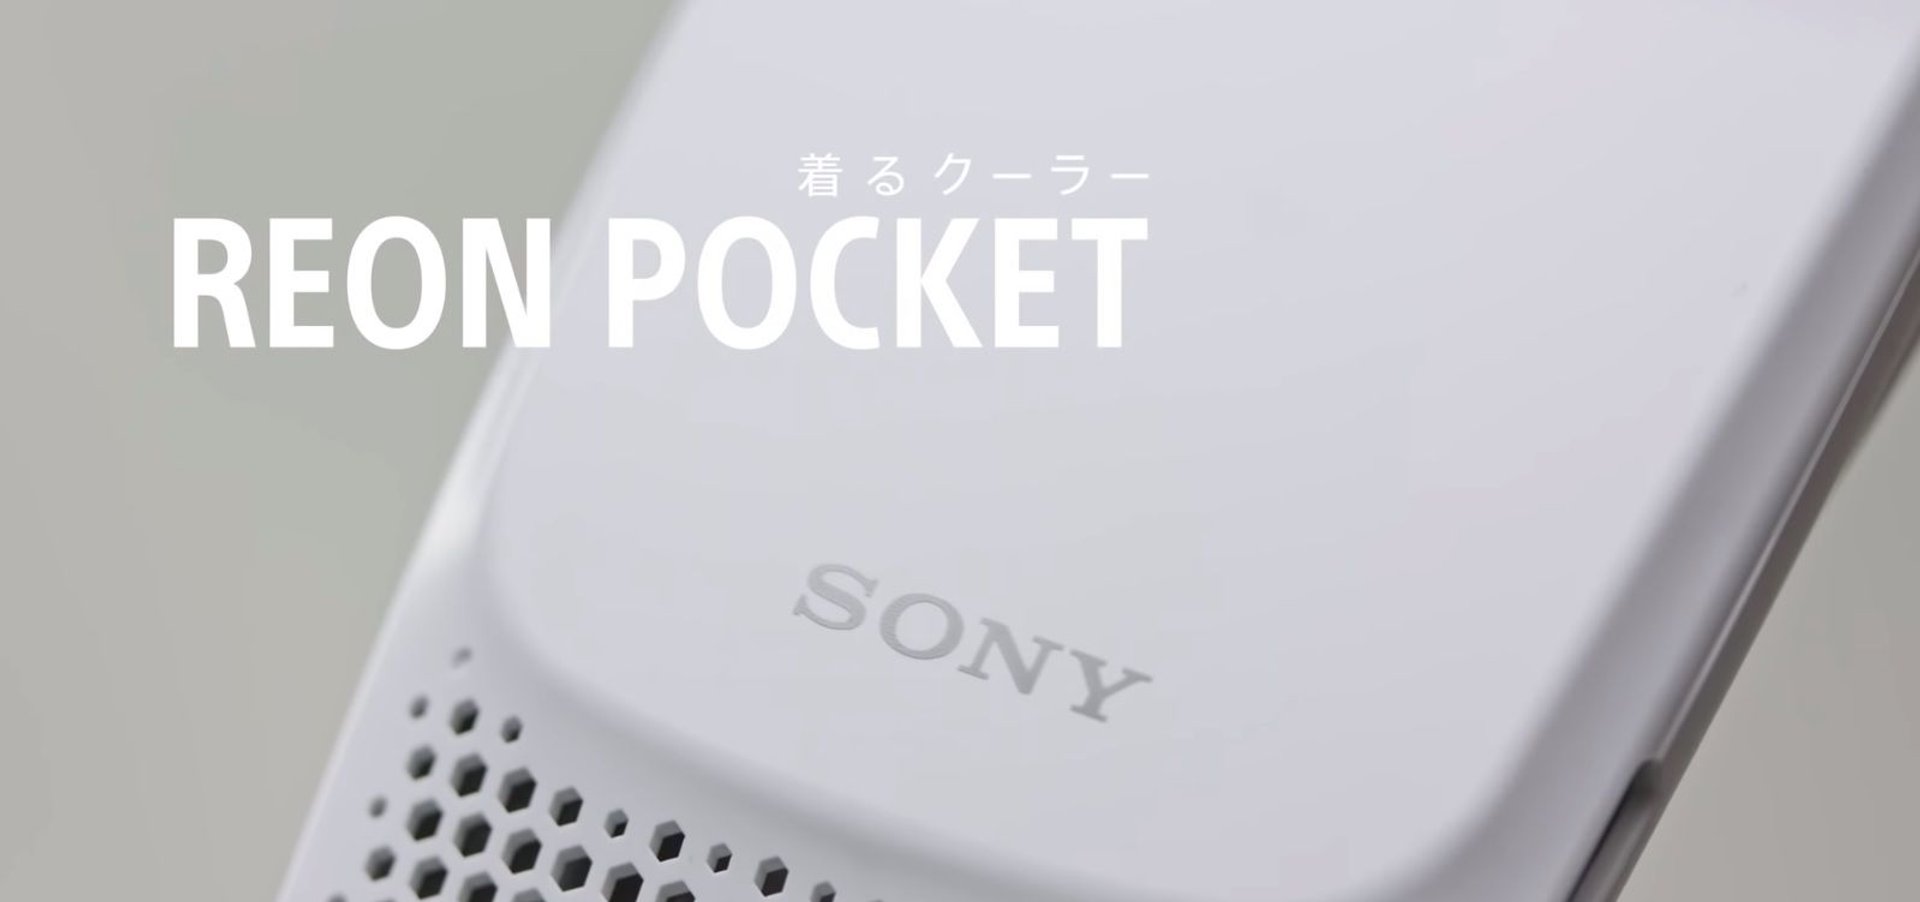 Sony Reon Pocket